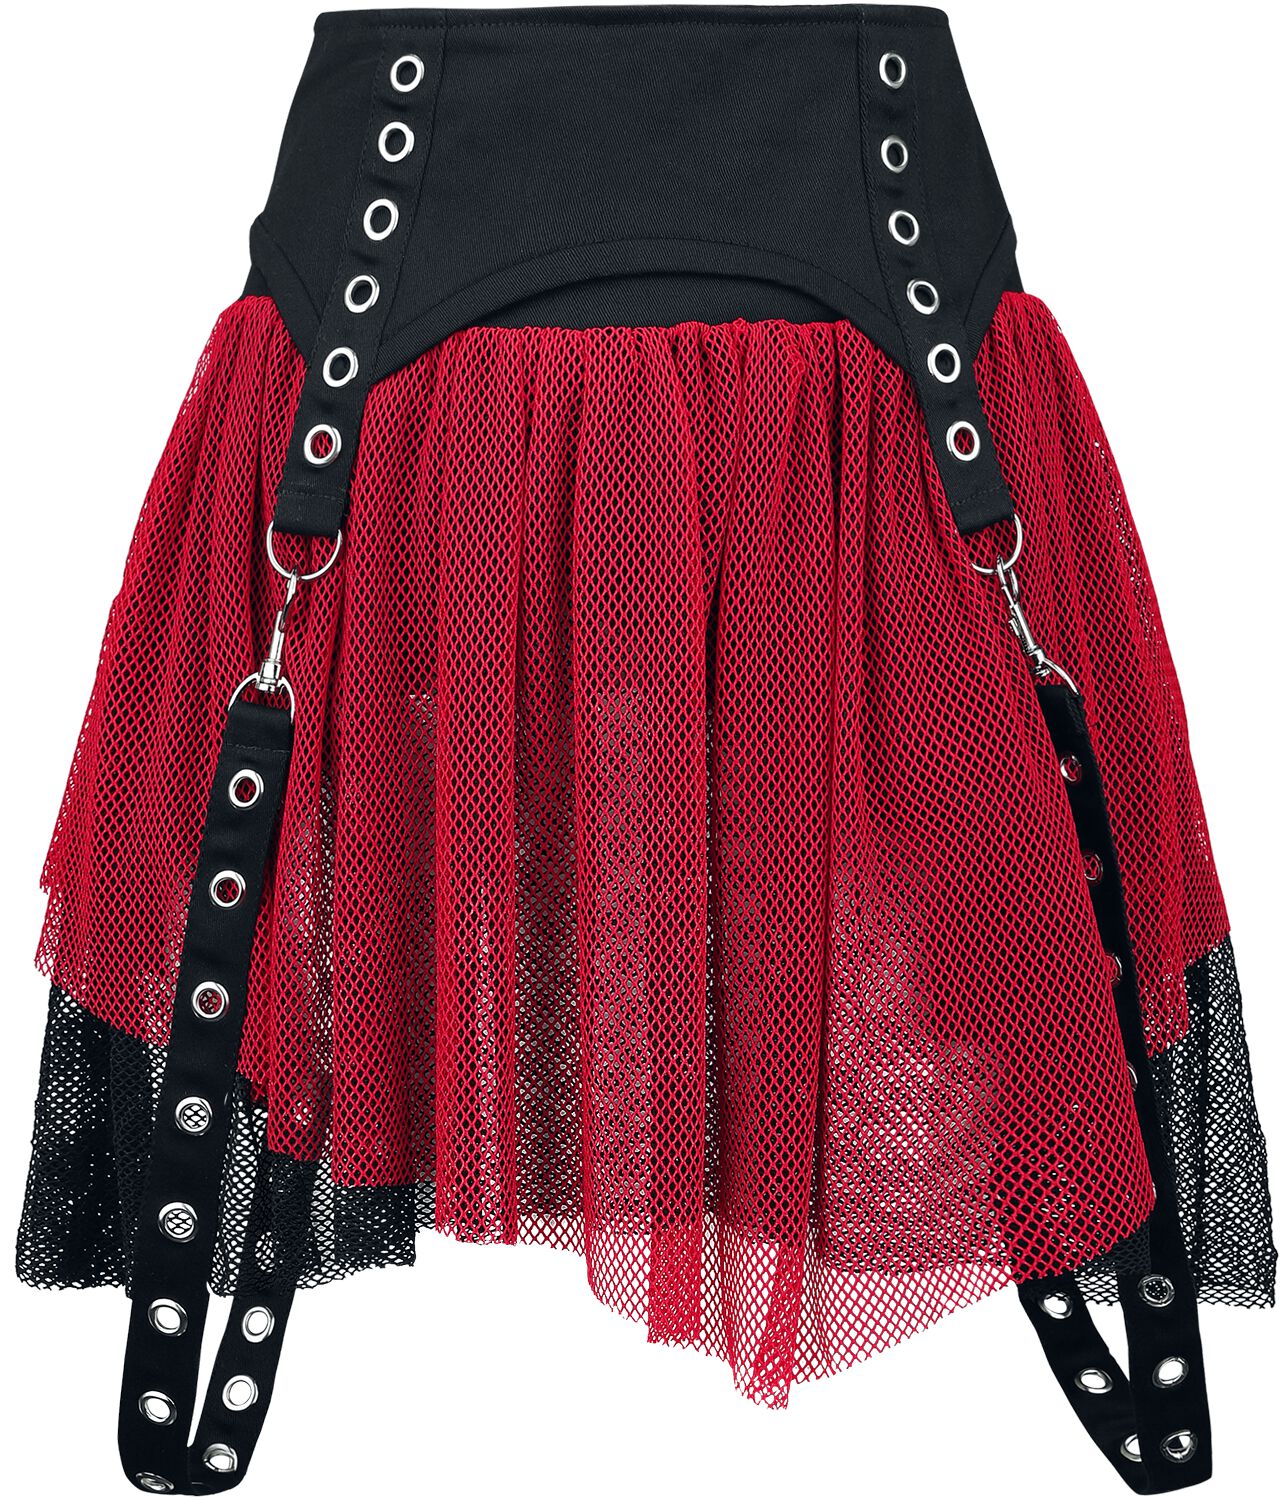 Poizen Industries - Gothic Kurzer Rock - Cybele Skirt - XS bis XXL - für Damen - Größe XXL - schwarz/rot